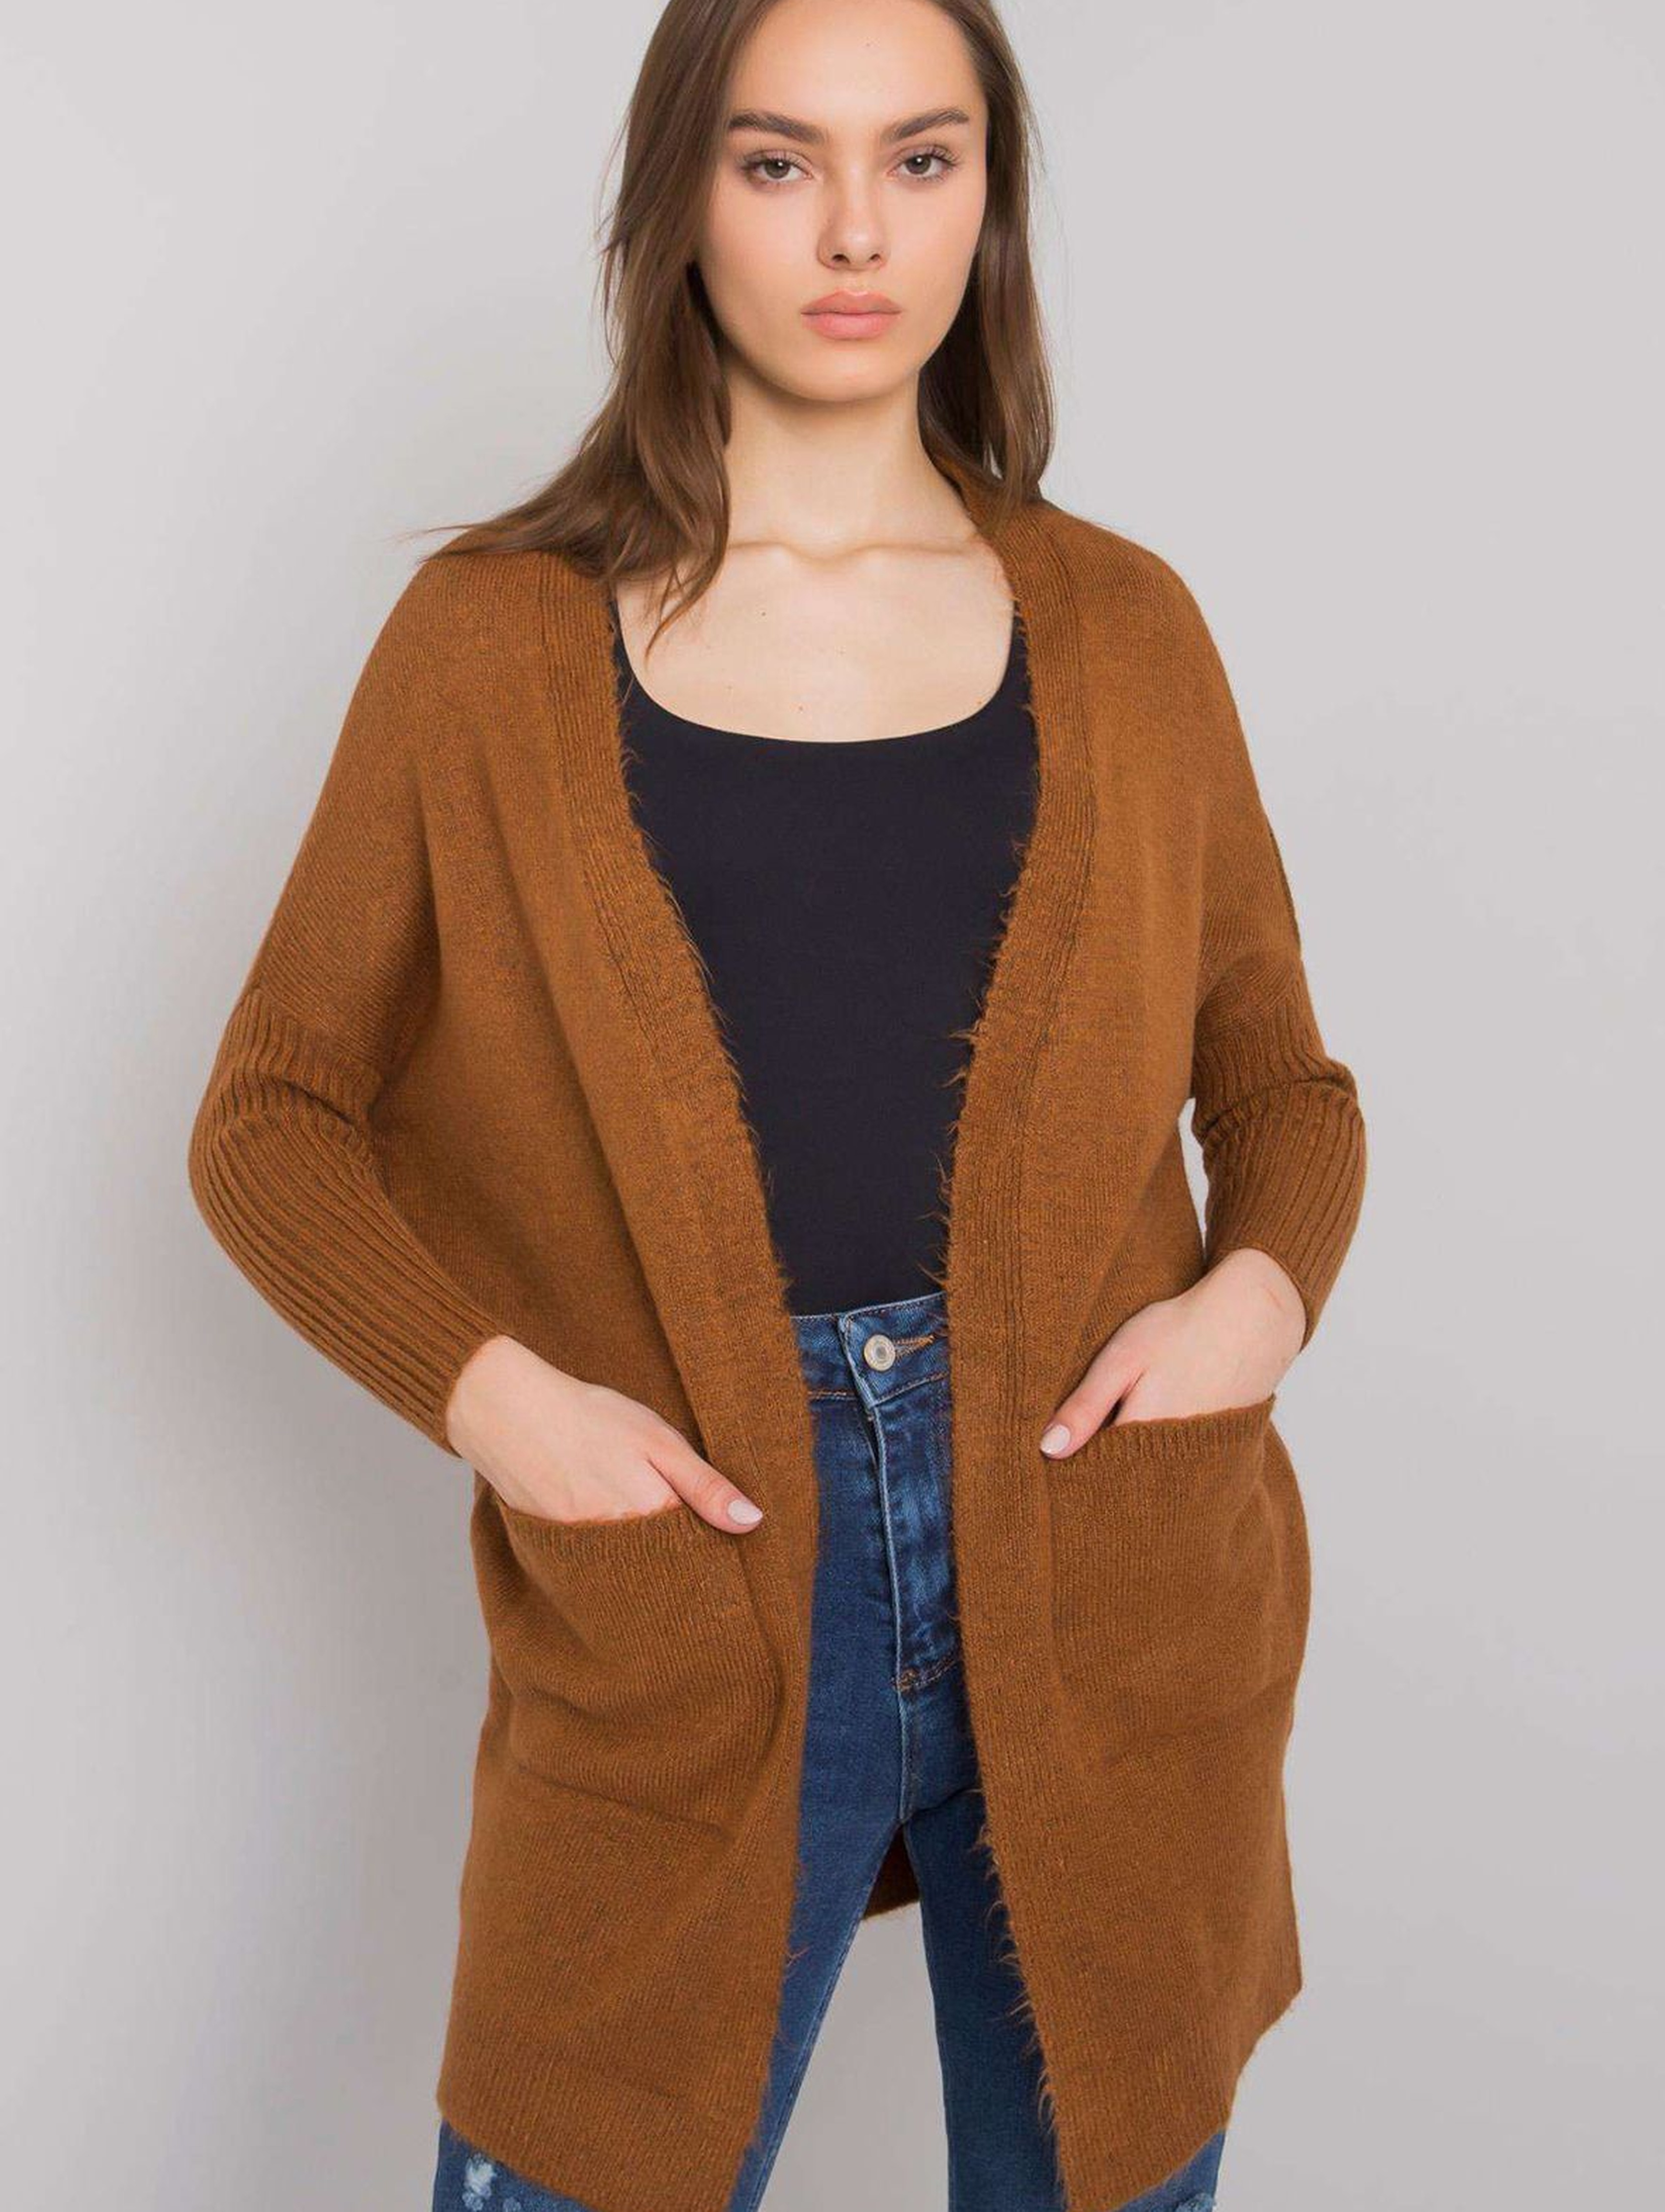 Sweter damski brązowy z kieszeniami